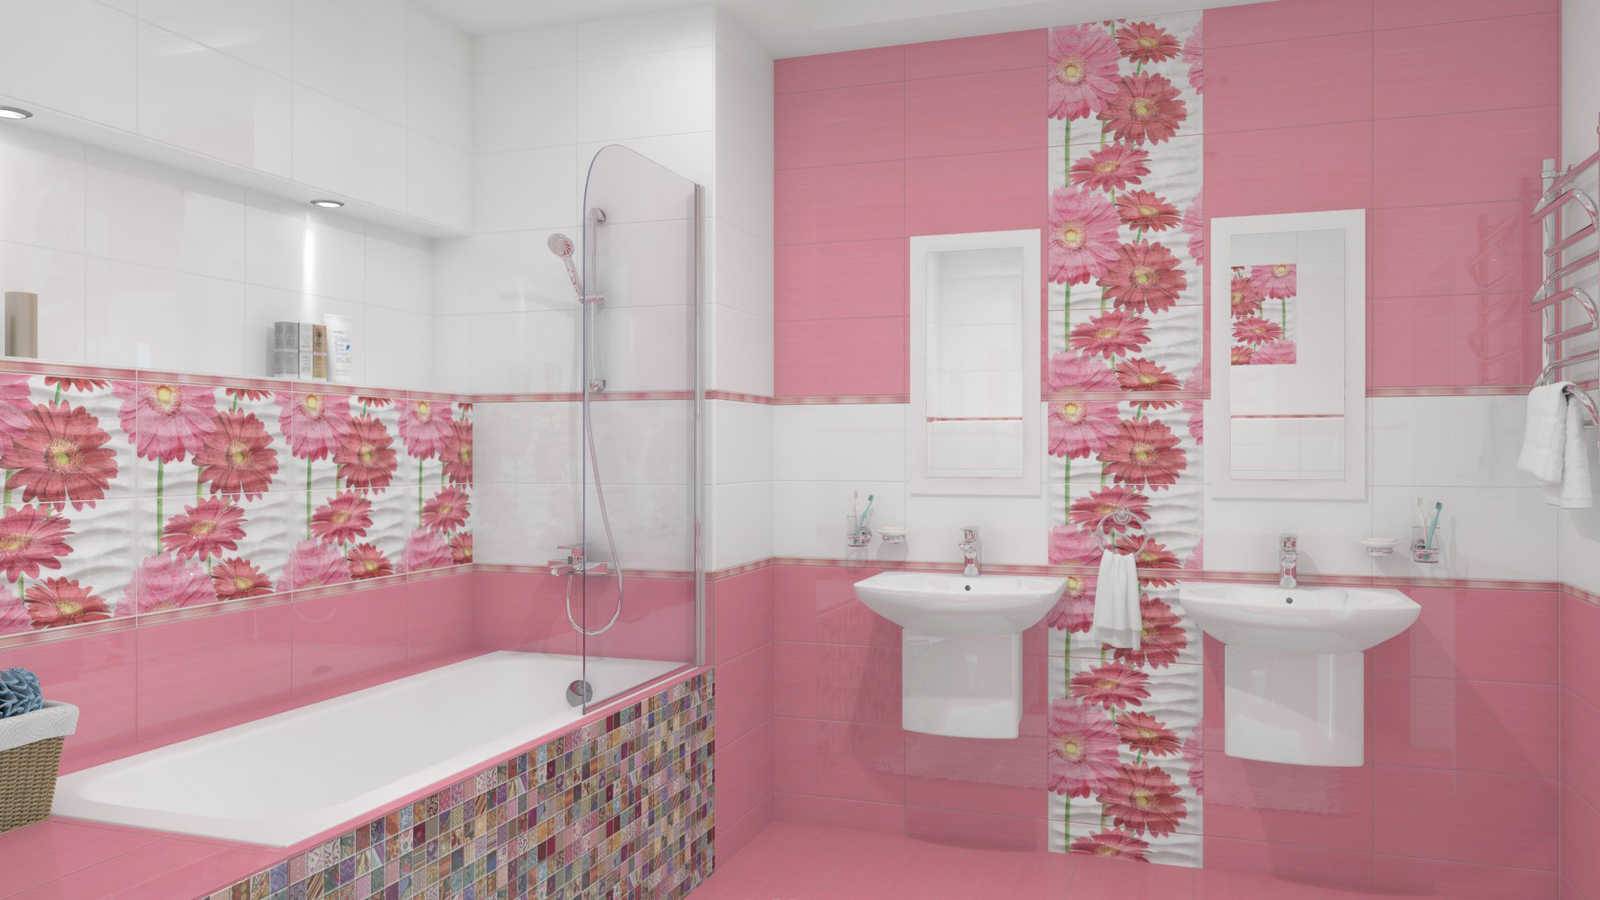 7 материалов для отделки полов в ванной комнате